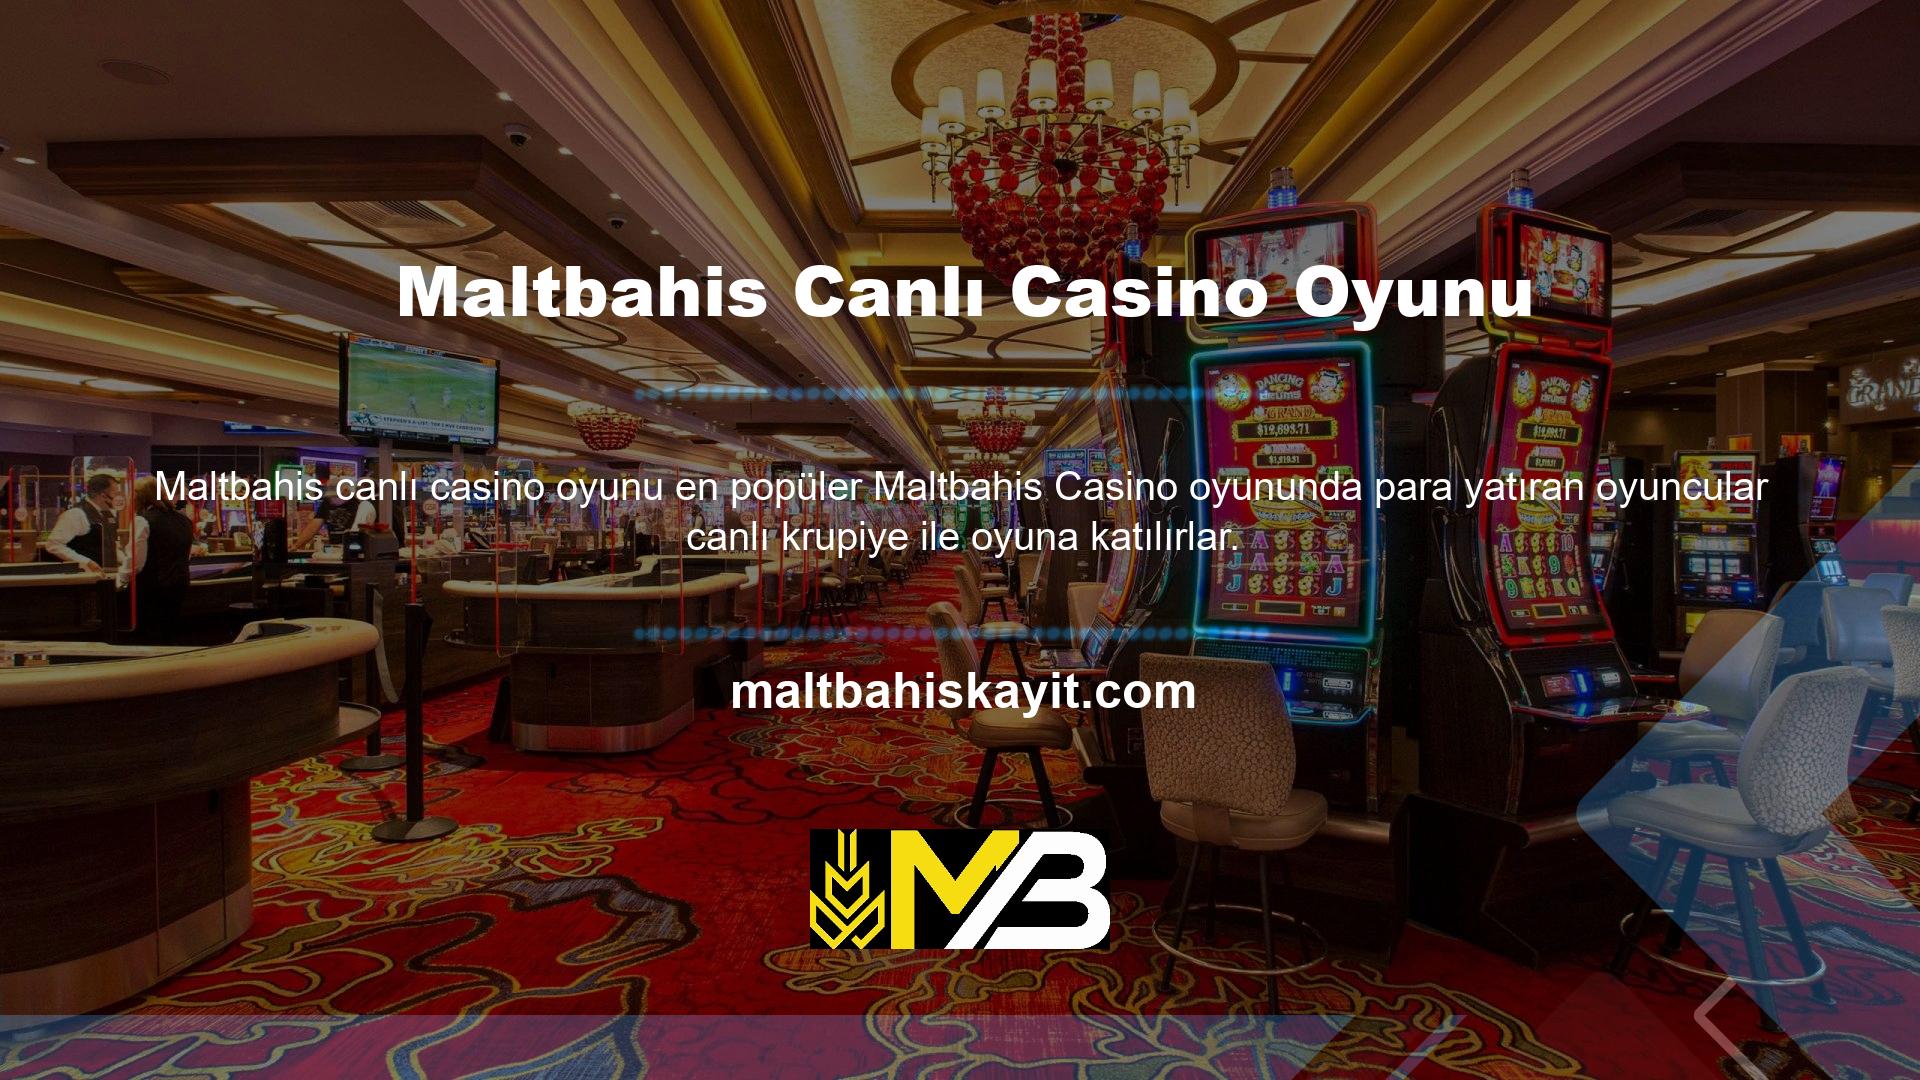 Kullanıcı adı ve şifresini kullanarak giriş yaparak casino oyunlarına giriş yapan kullanıcılar